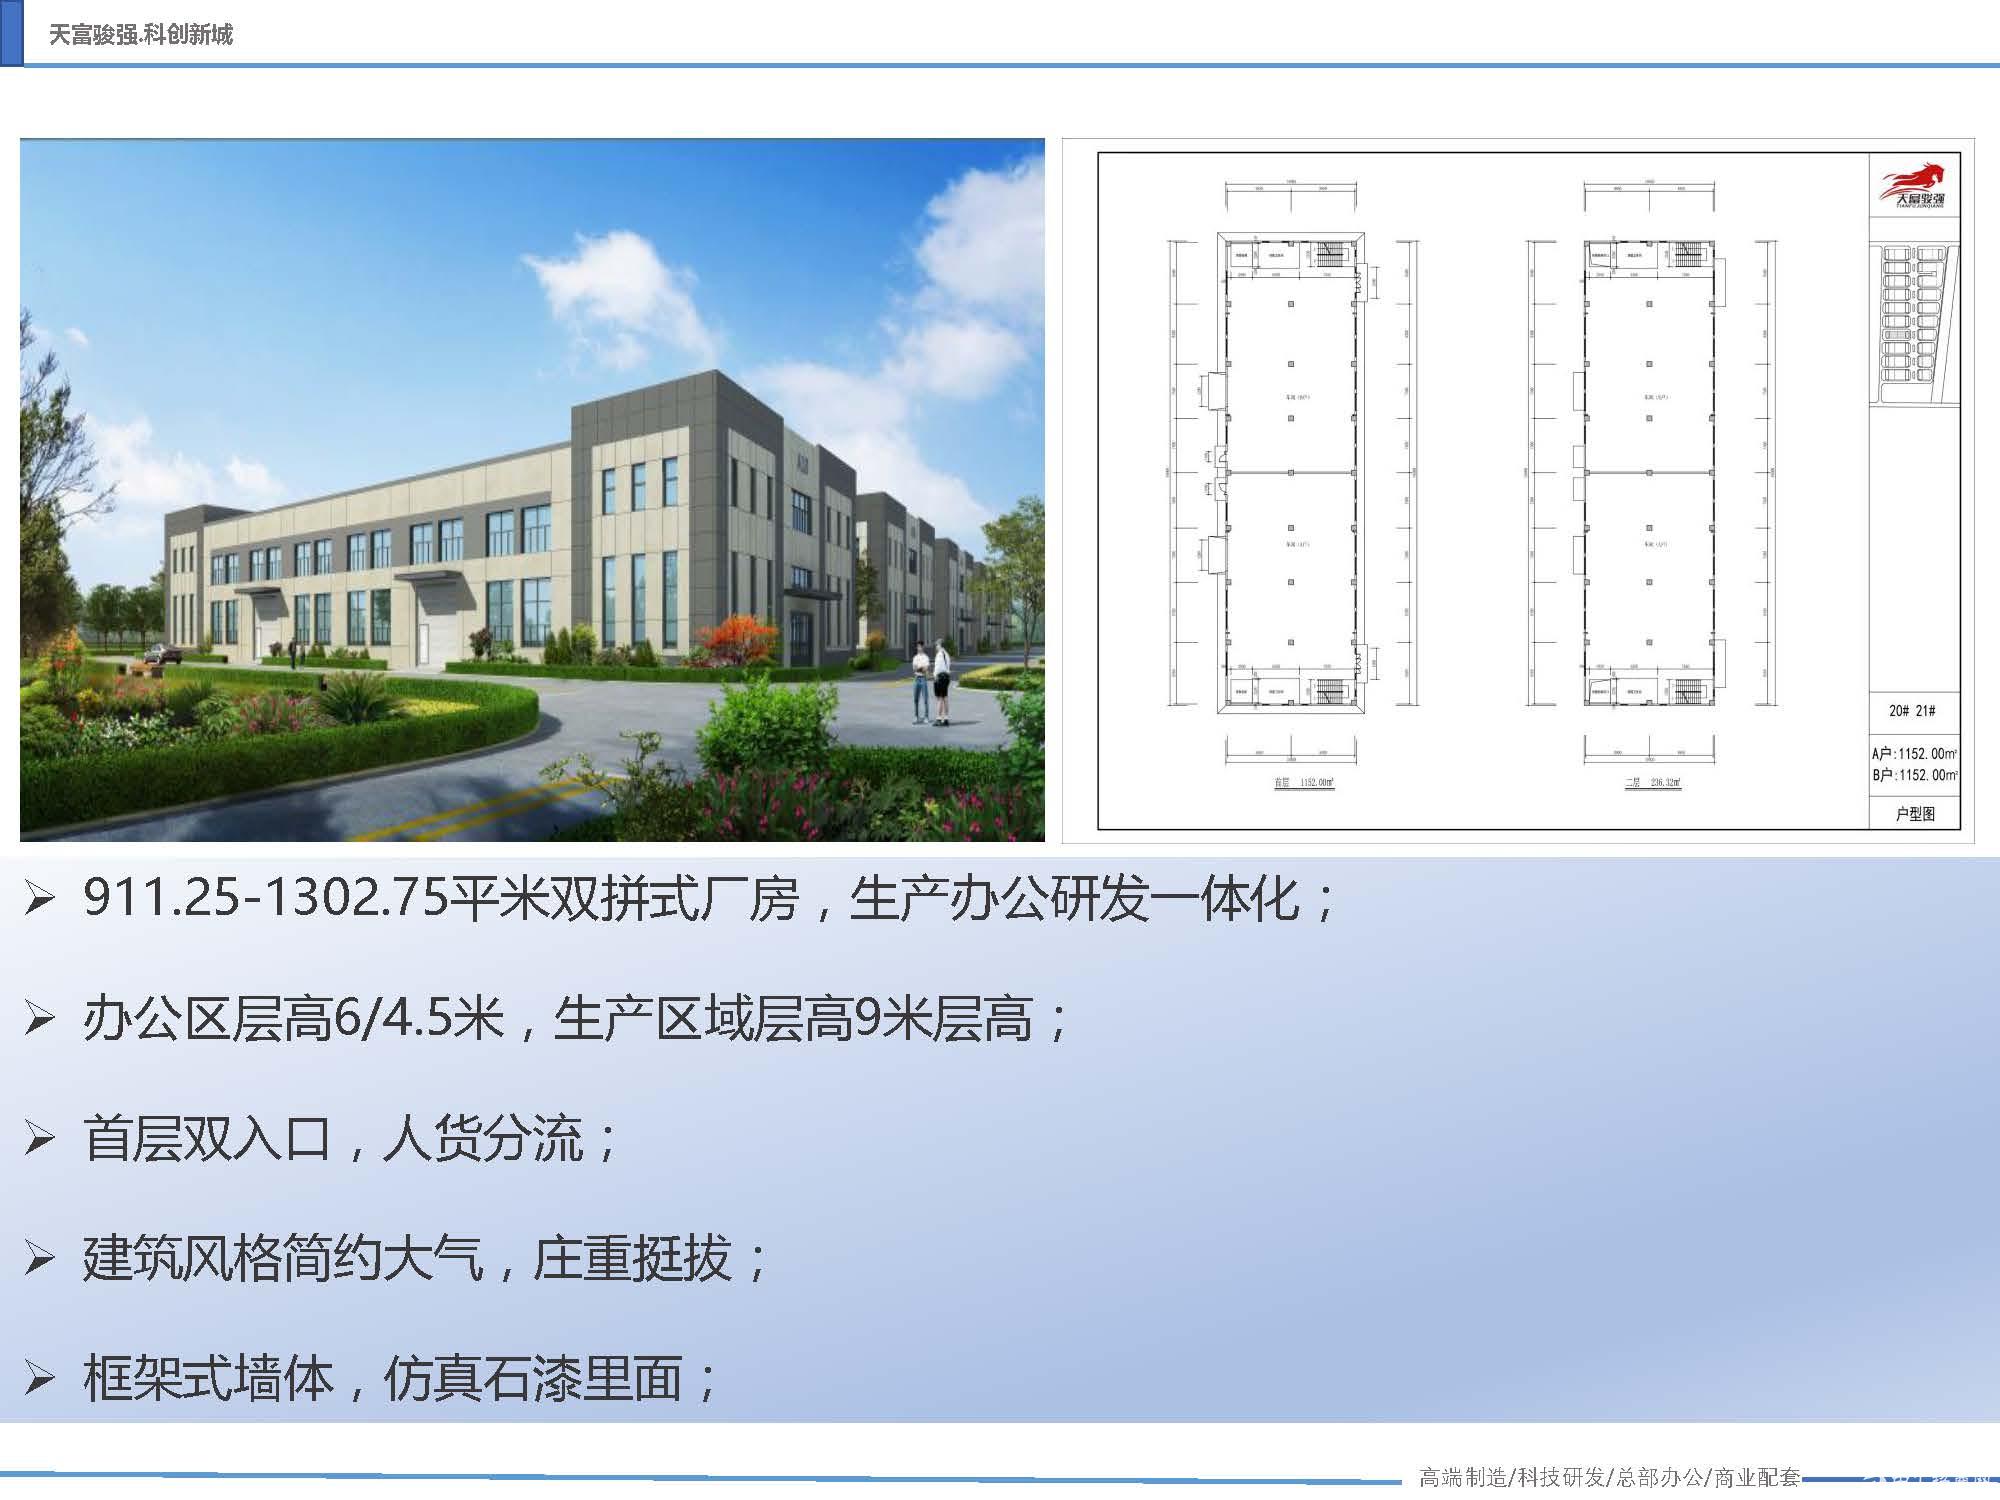 天津滨海新区工业园标准单层厂房 高9.3米-图4